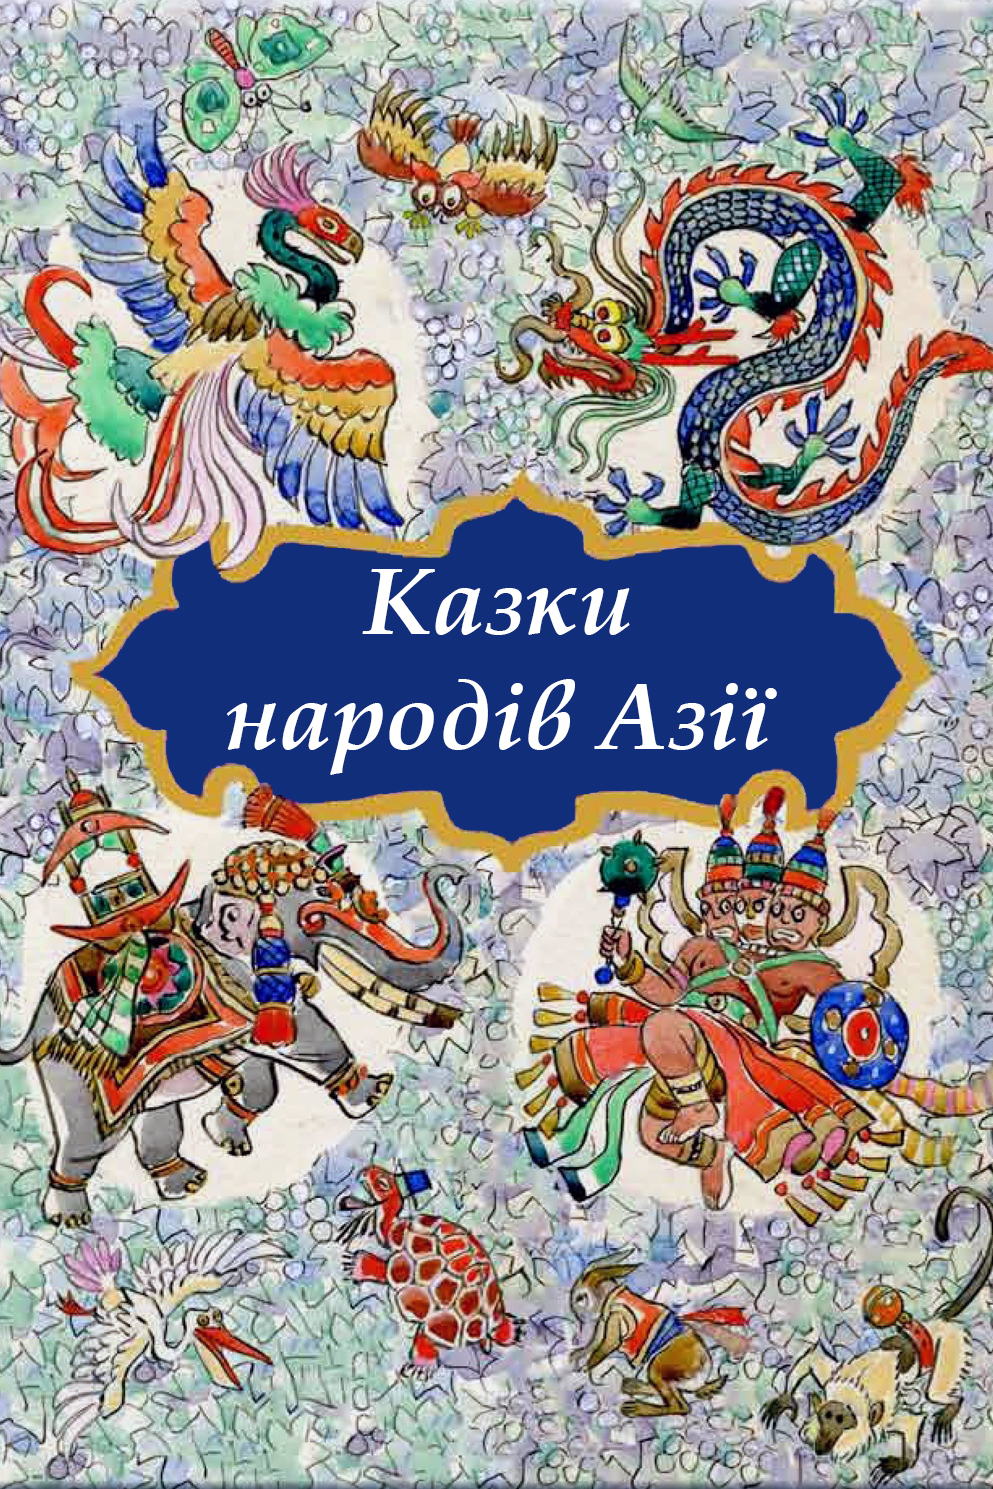 Казки Азії - Навколо світу на крилах казки - Слухати Книги Українською Онлайн Безкоштовно 📘 Knigi-Audio.com/uk/